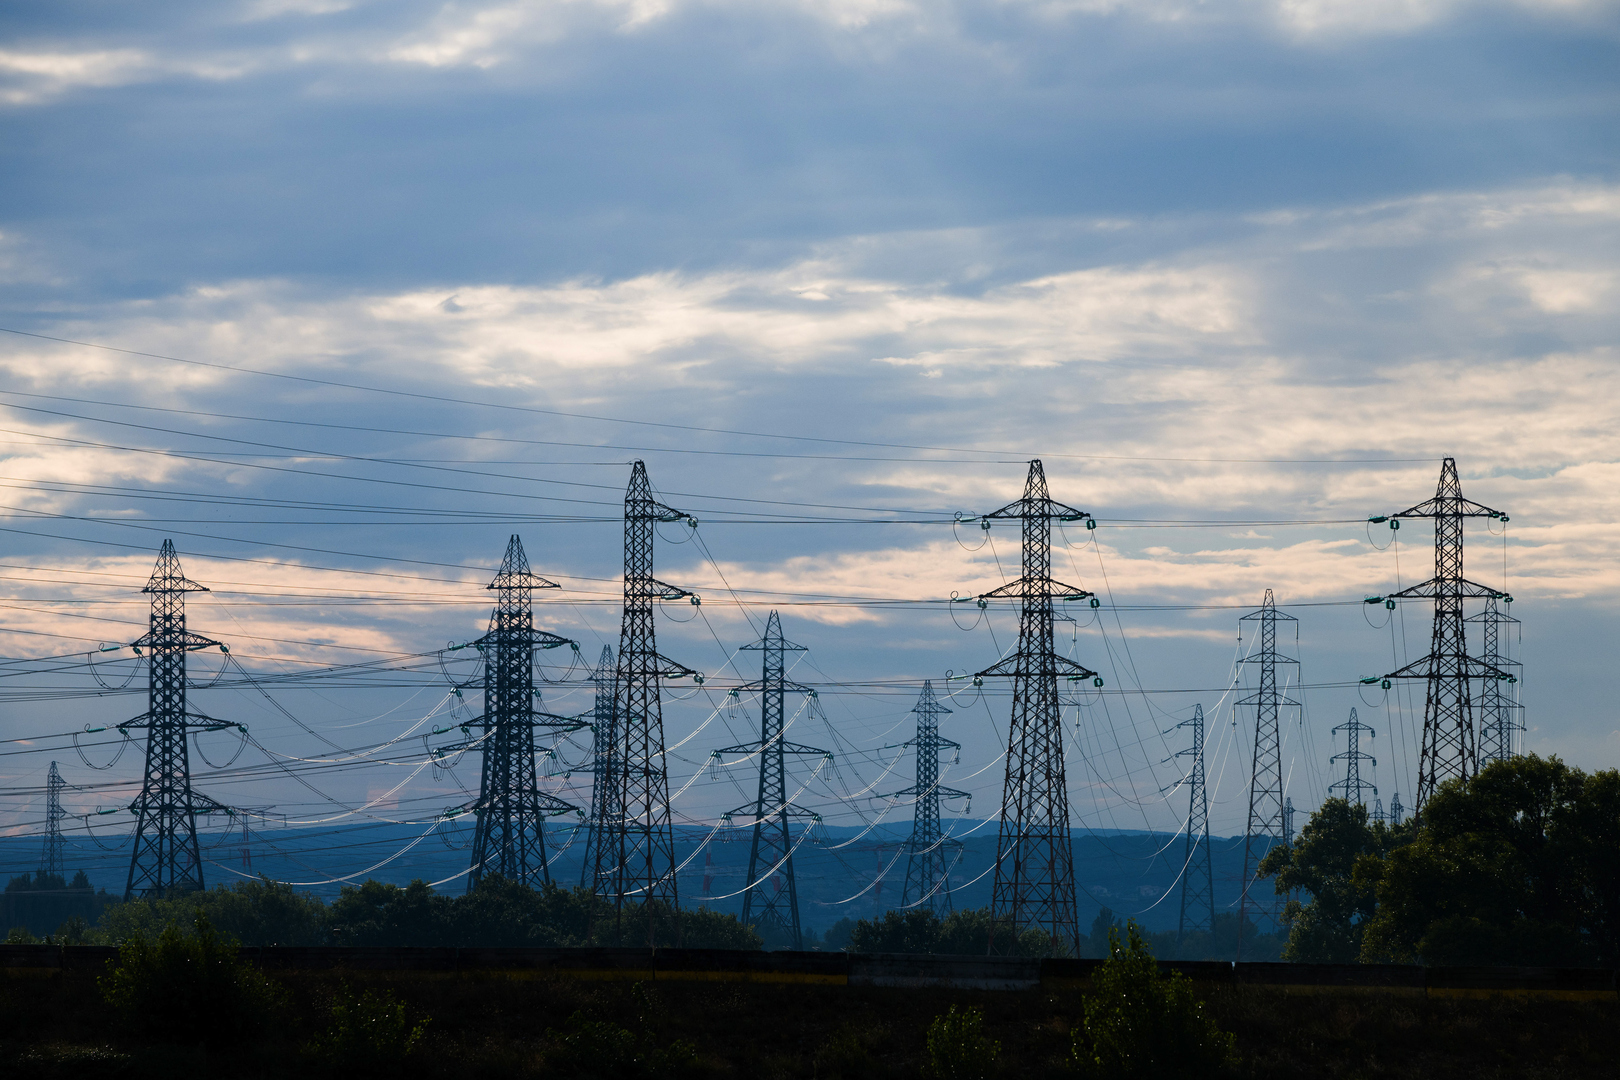 فرنسا تدرس إعادة إنتاج الكهرباء من محطة تعمل بالفحم في ضوء اضطراب سوق الطاقة